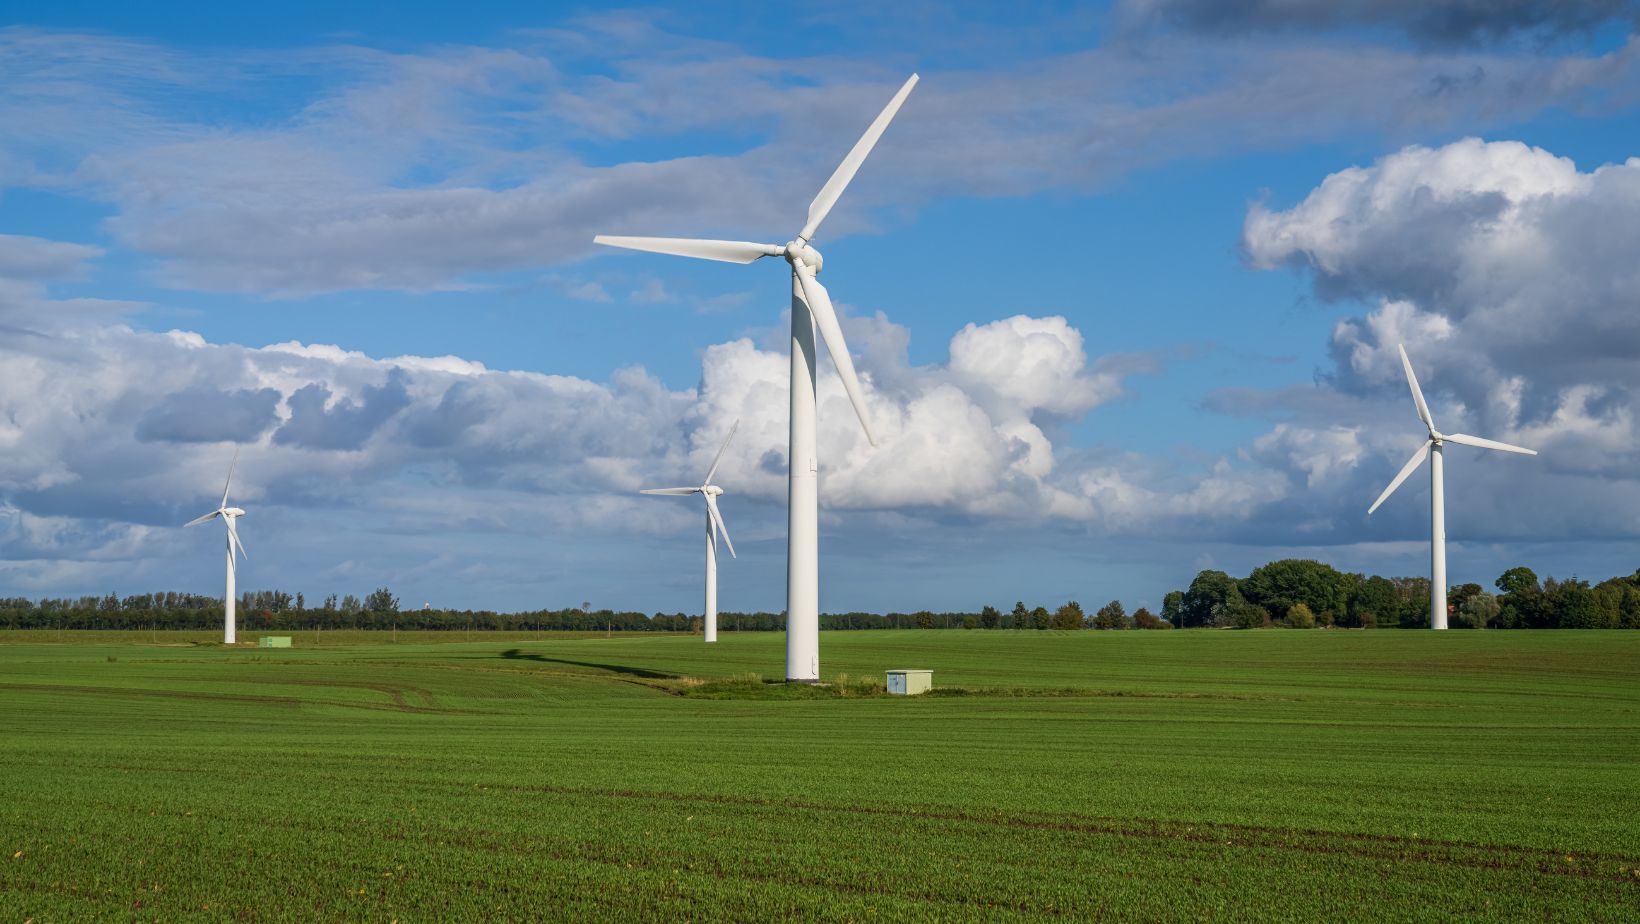 Man sieht vier Windräder auf grüner Wiese vor blauem Himmel mit Schäfchenwolken als Symbolbild für Windenergie als Wirtschaftsförderung